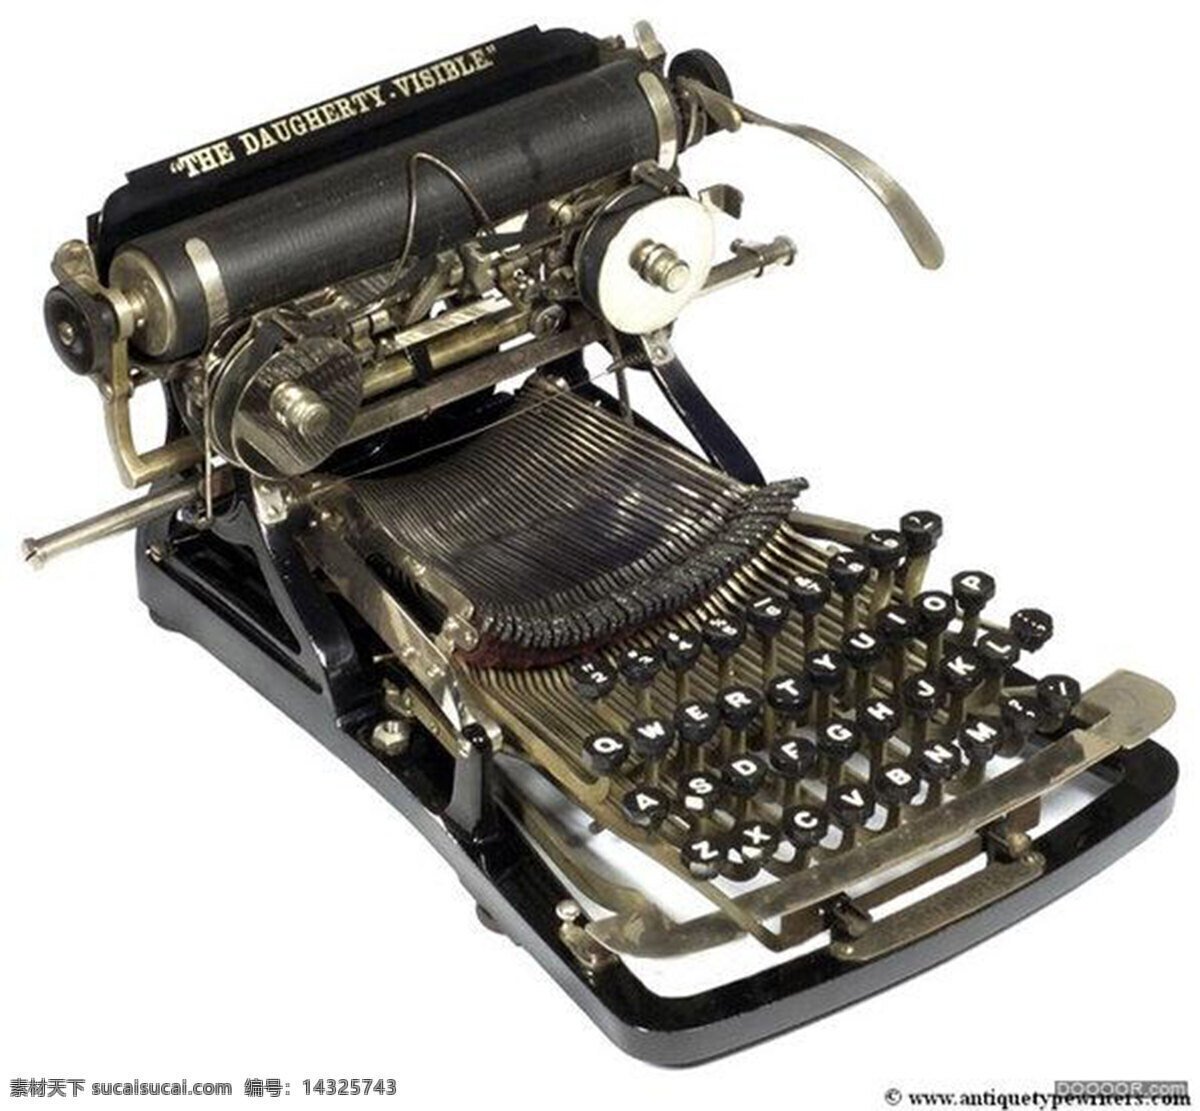 古老 欧洲 早期 打字机 产品设计 创意 工业设计 家居 简约 灵感 饰品